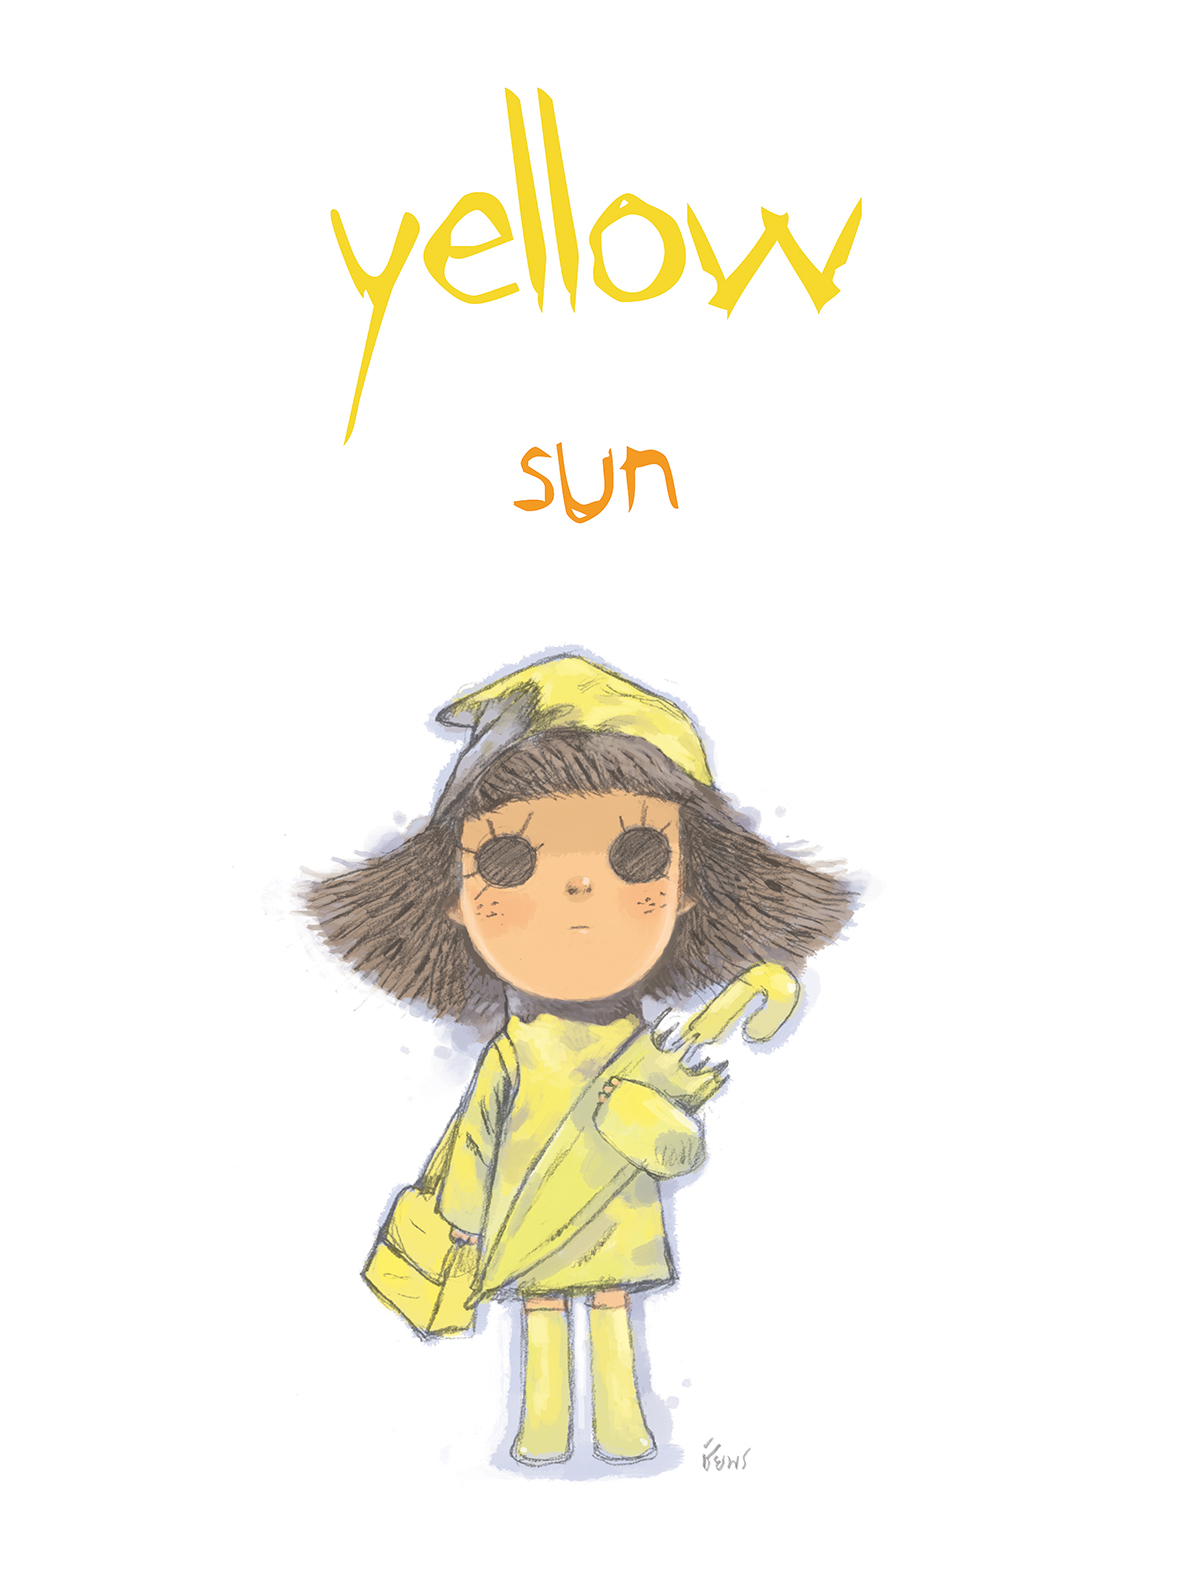 YELLOW SUN (เล่มแรก)